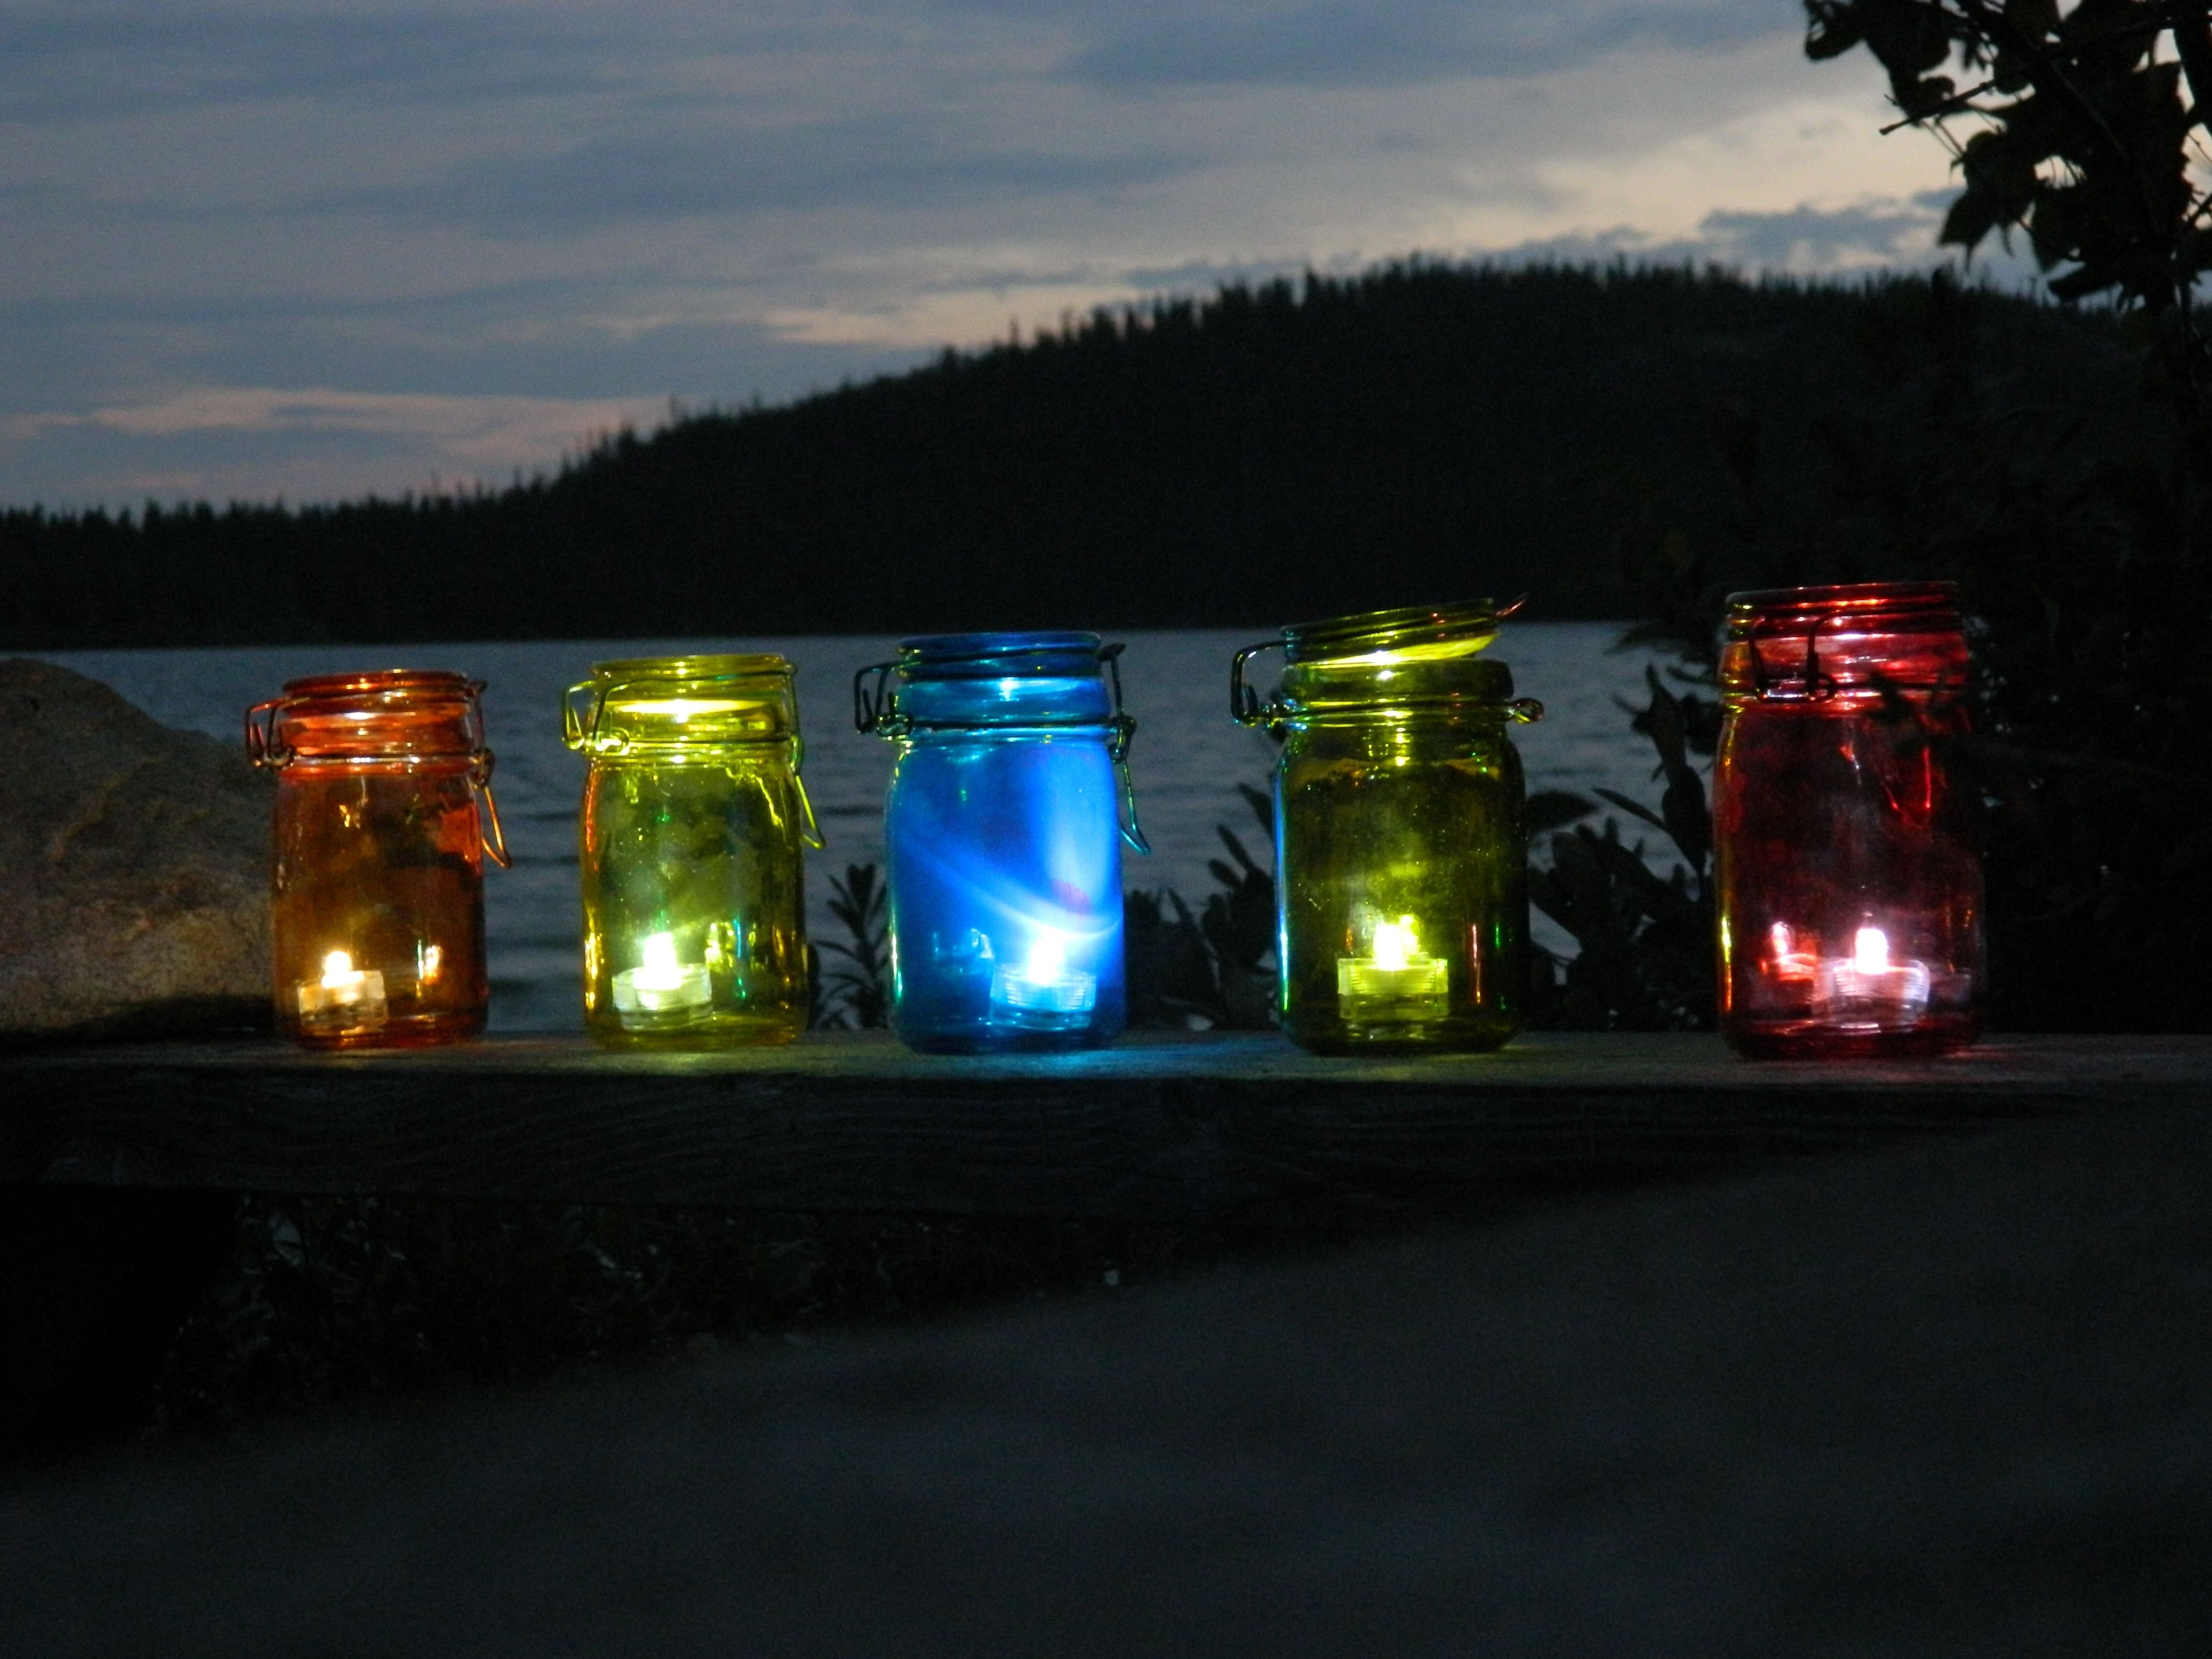 Diy Outdoor Tea Light Lanterns | A Little Bit Of Glass With Regard To Outdoor Tea Light Lanterns (Photo 3 of 20)